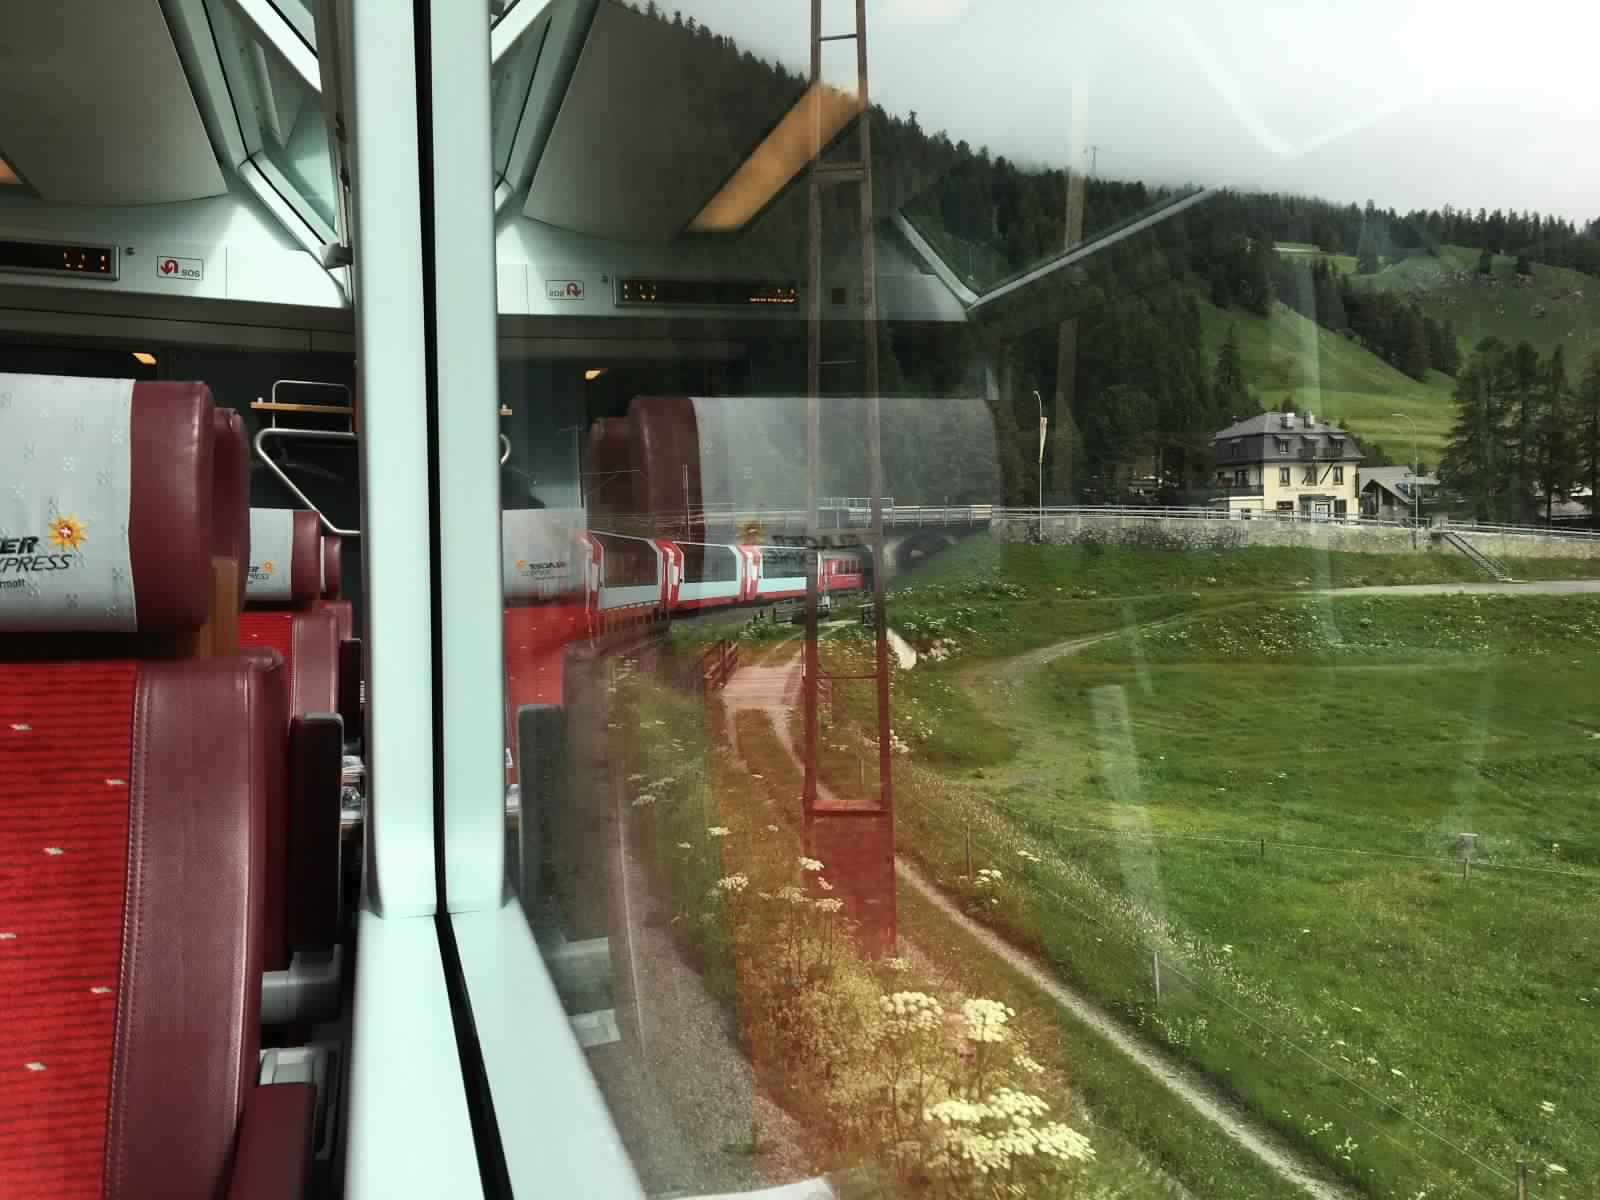 "بالصور" جولة مع قطار جلاسير إكسبريس عبر جبال اﻷلب السويسرية 29